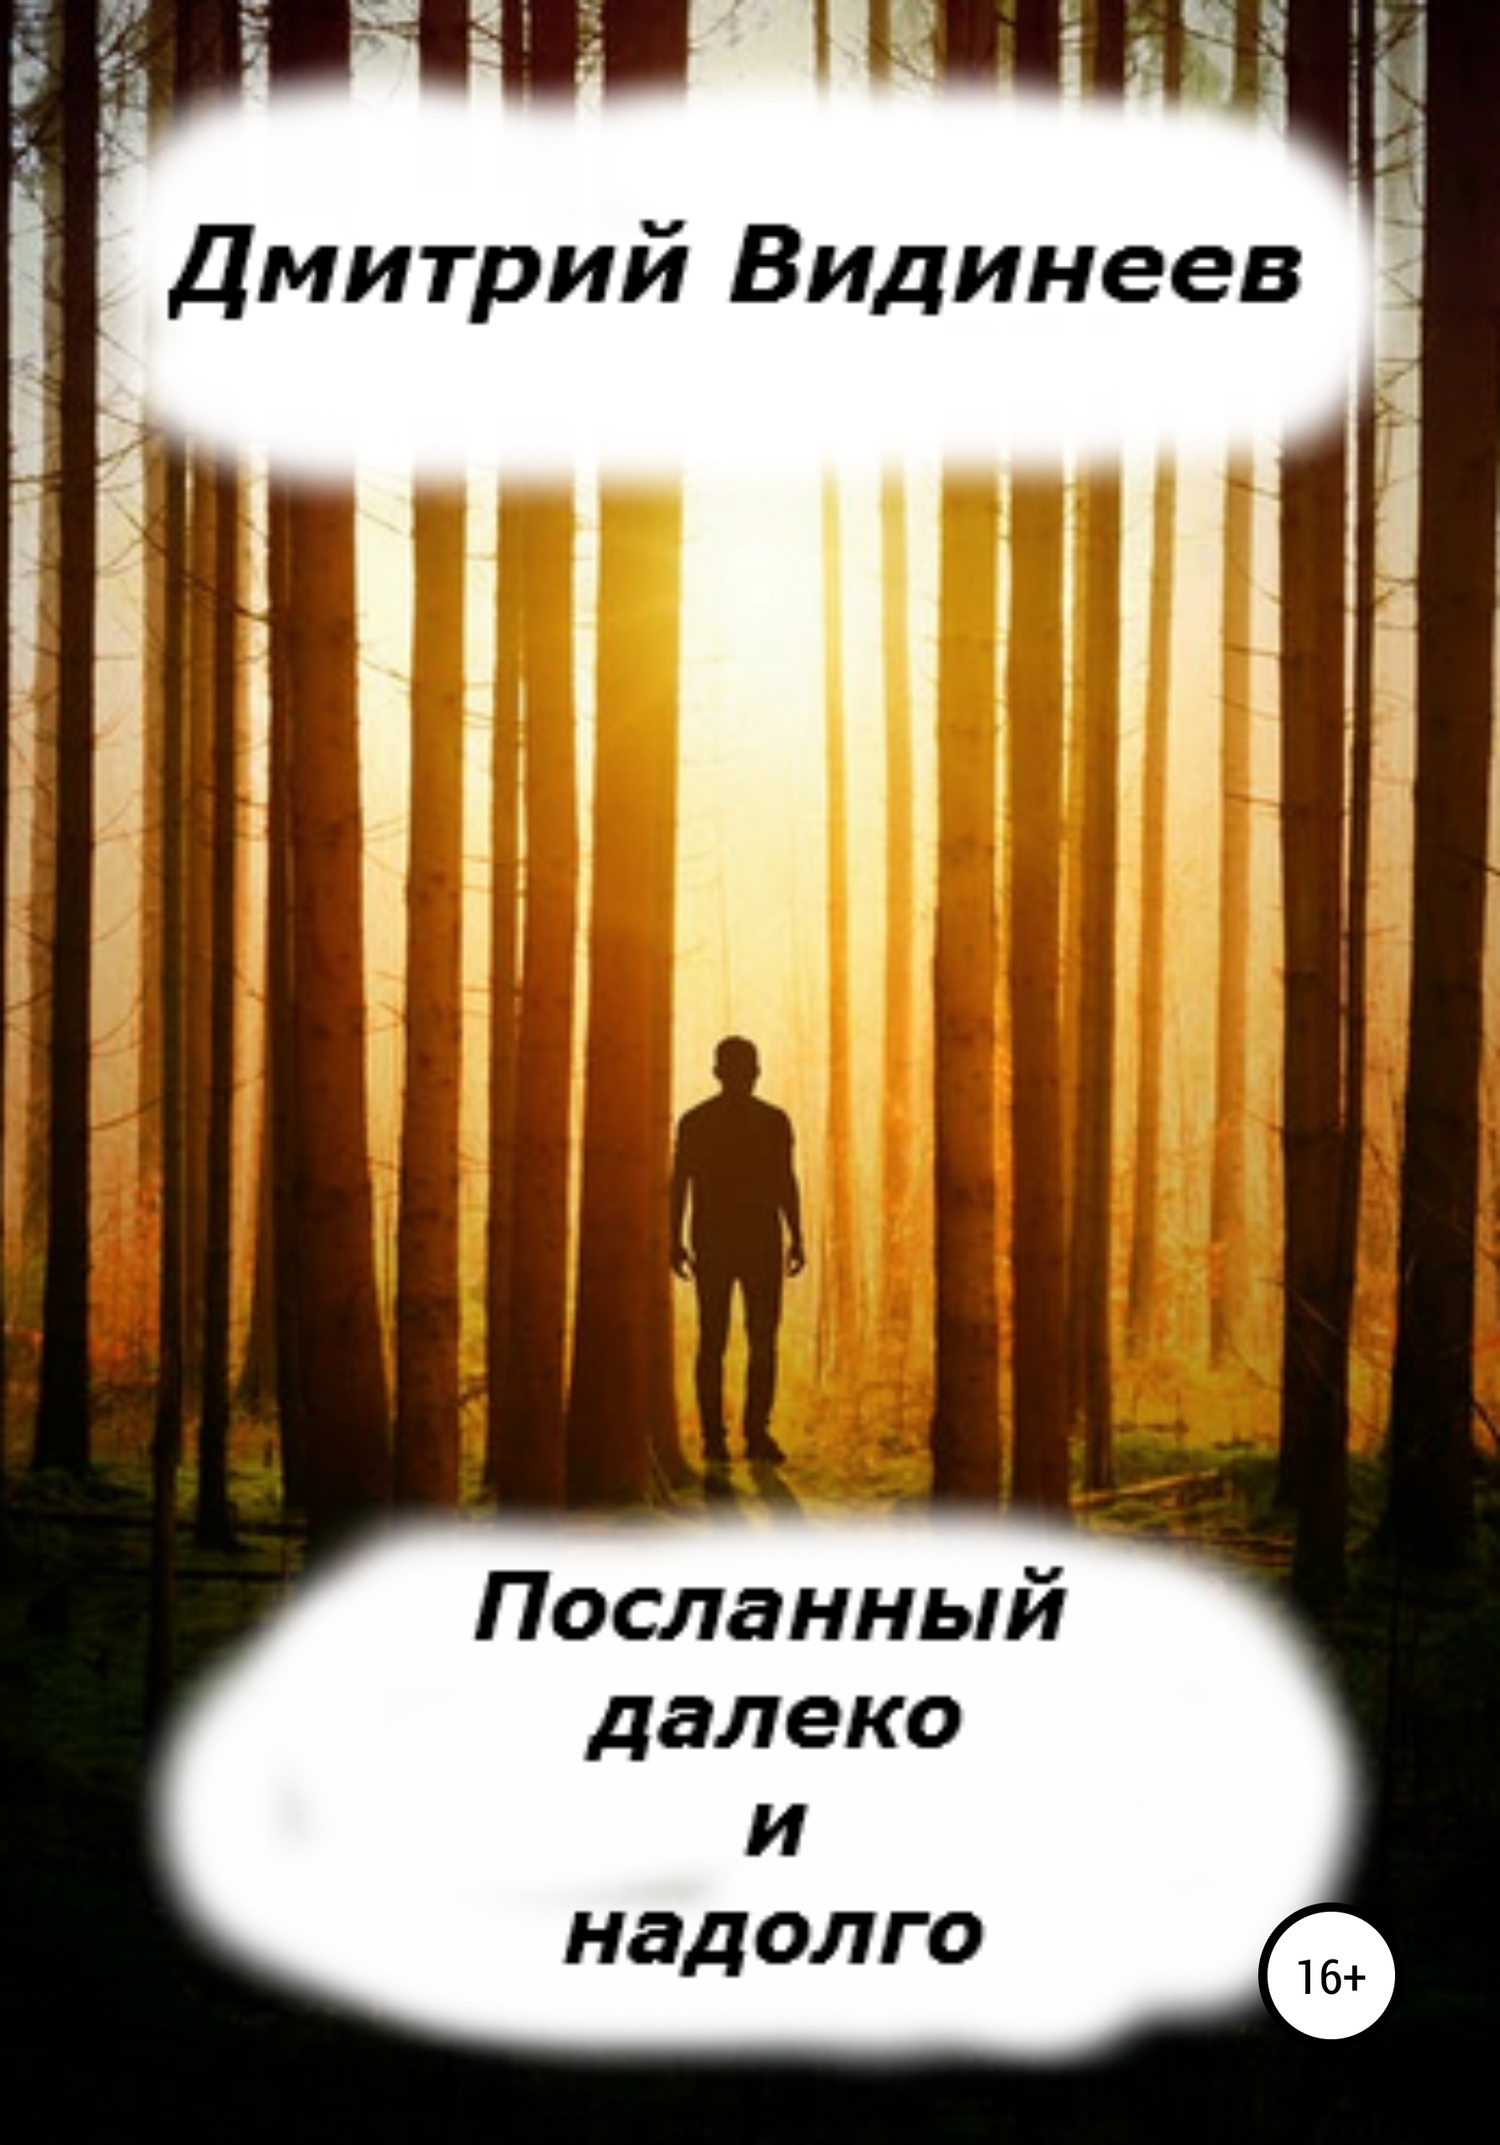 Посланный далеко и надолго - Дмитрий Александрович Видинеев